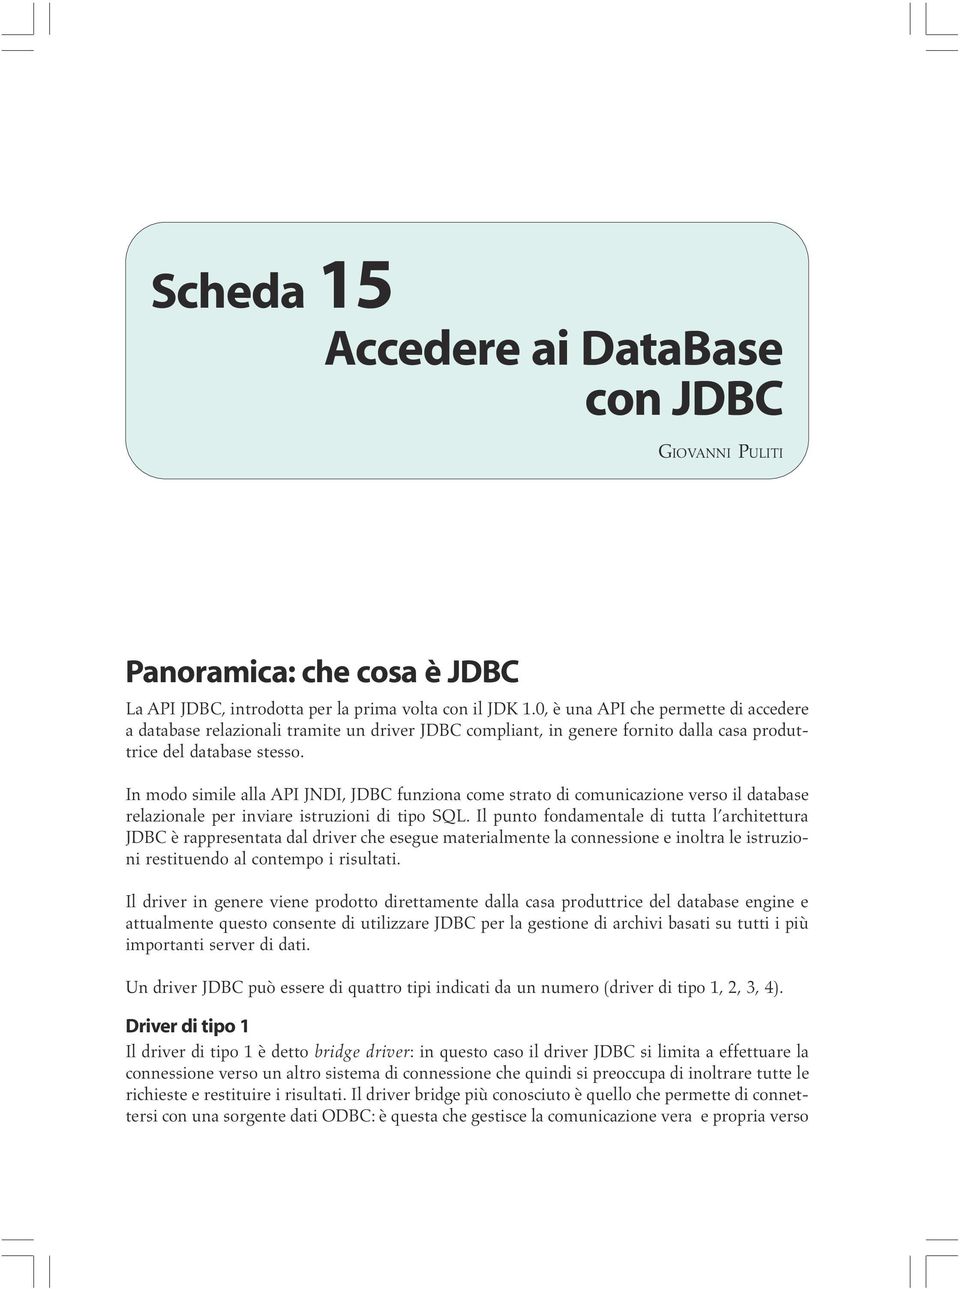 In modo simile alla API JNDI, JDBC funziona come strato di comunicazione verso il database relazionale per inviare istruzioni di tipo SQL.